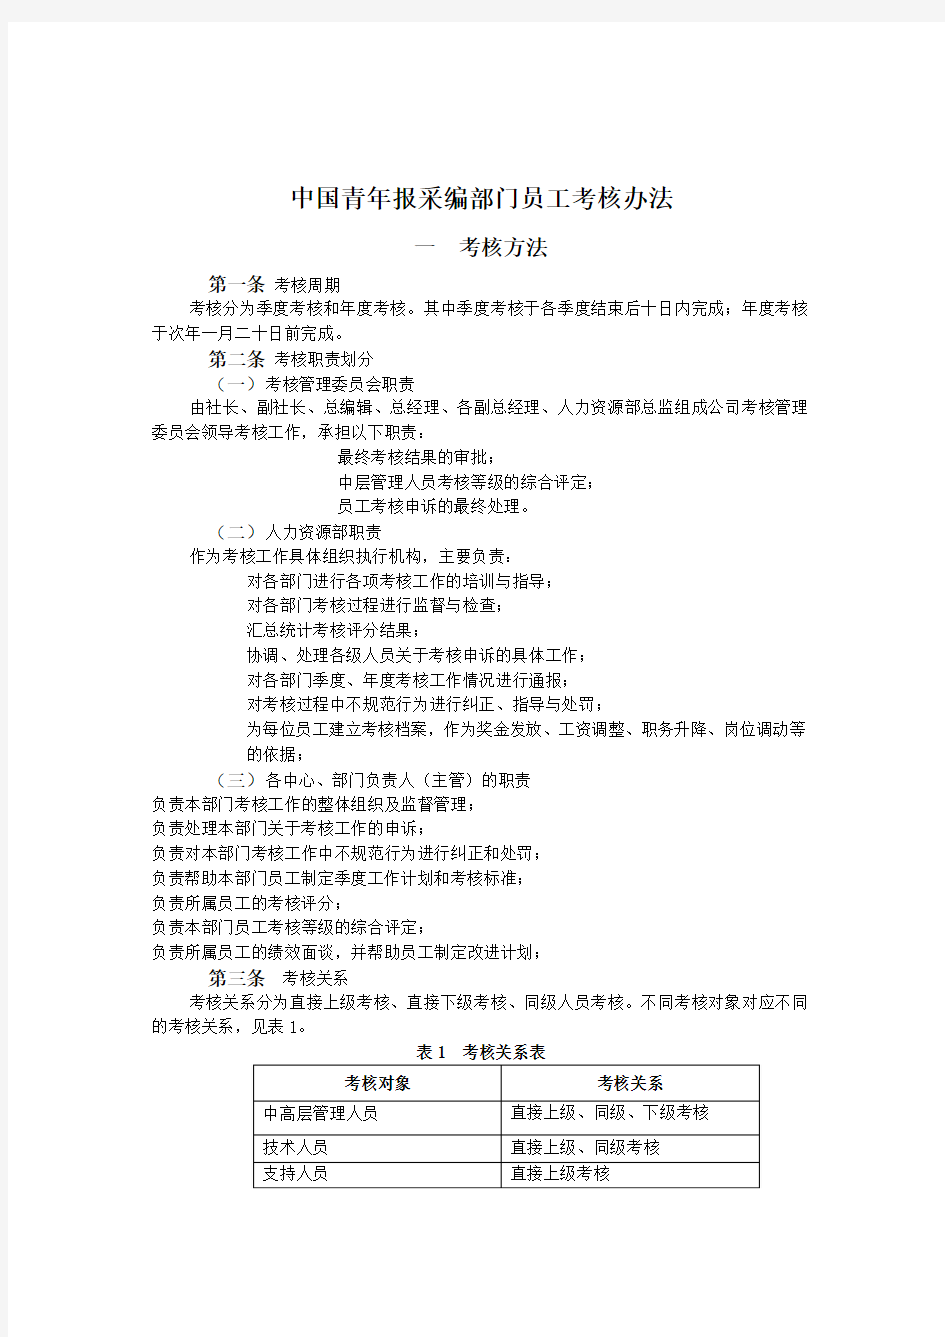 36泛华-中国青年报项目—中国青年报采编部门员工考核办法